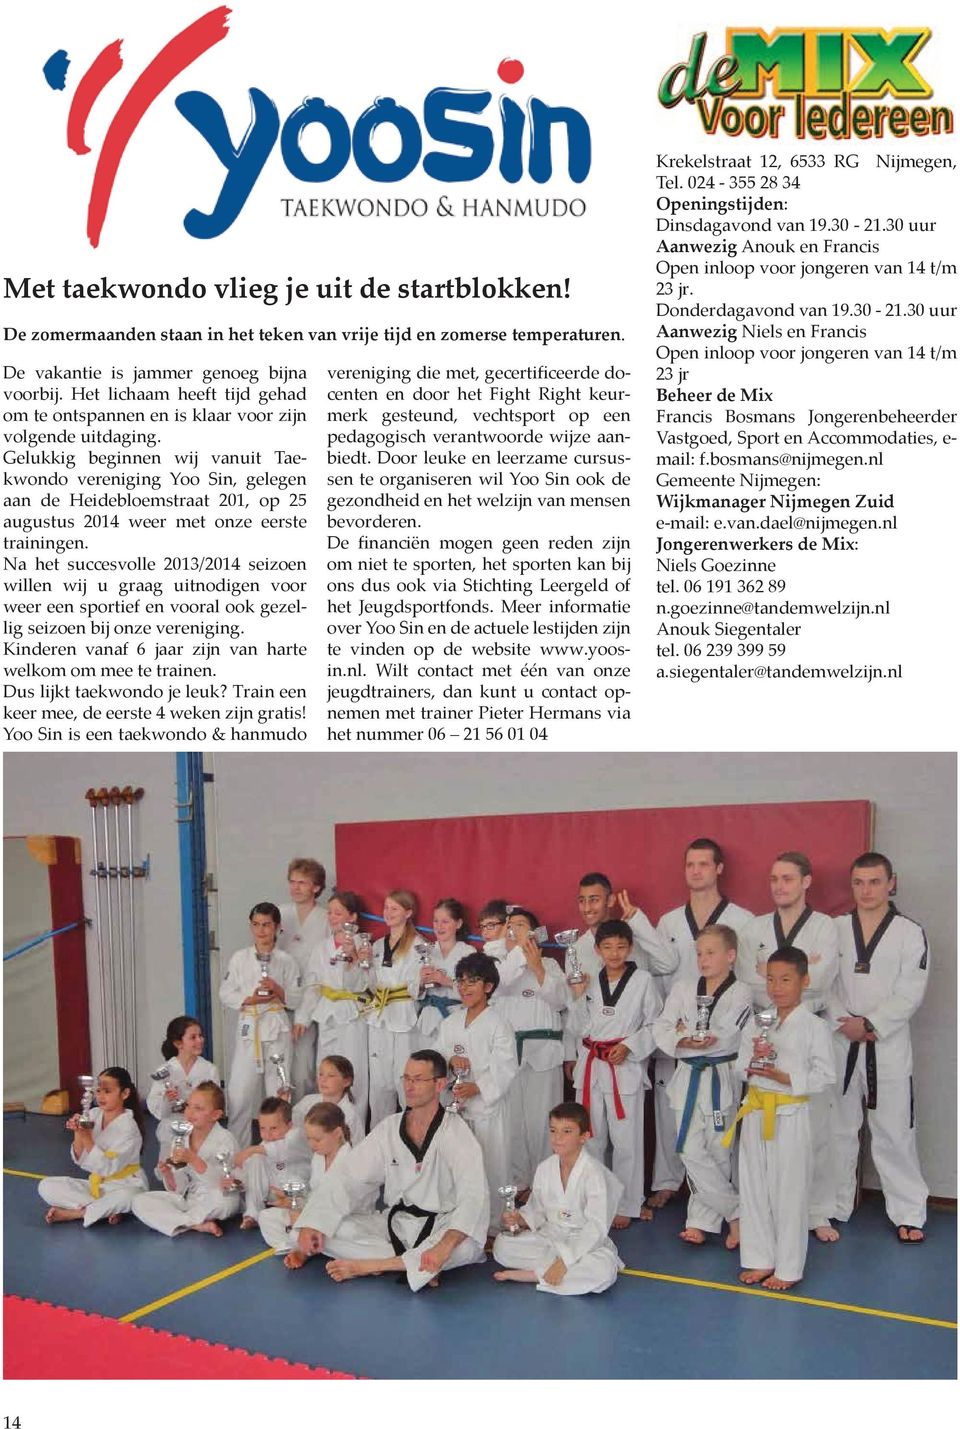 Gelukkig beginnen wij vanuit Taekwondo vereniging Yoo Sin, gelegen aan de Heidebloemstraat 201, op 25 augustus 2014 weer met onze eerste trainingen.